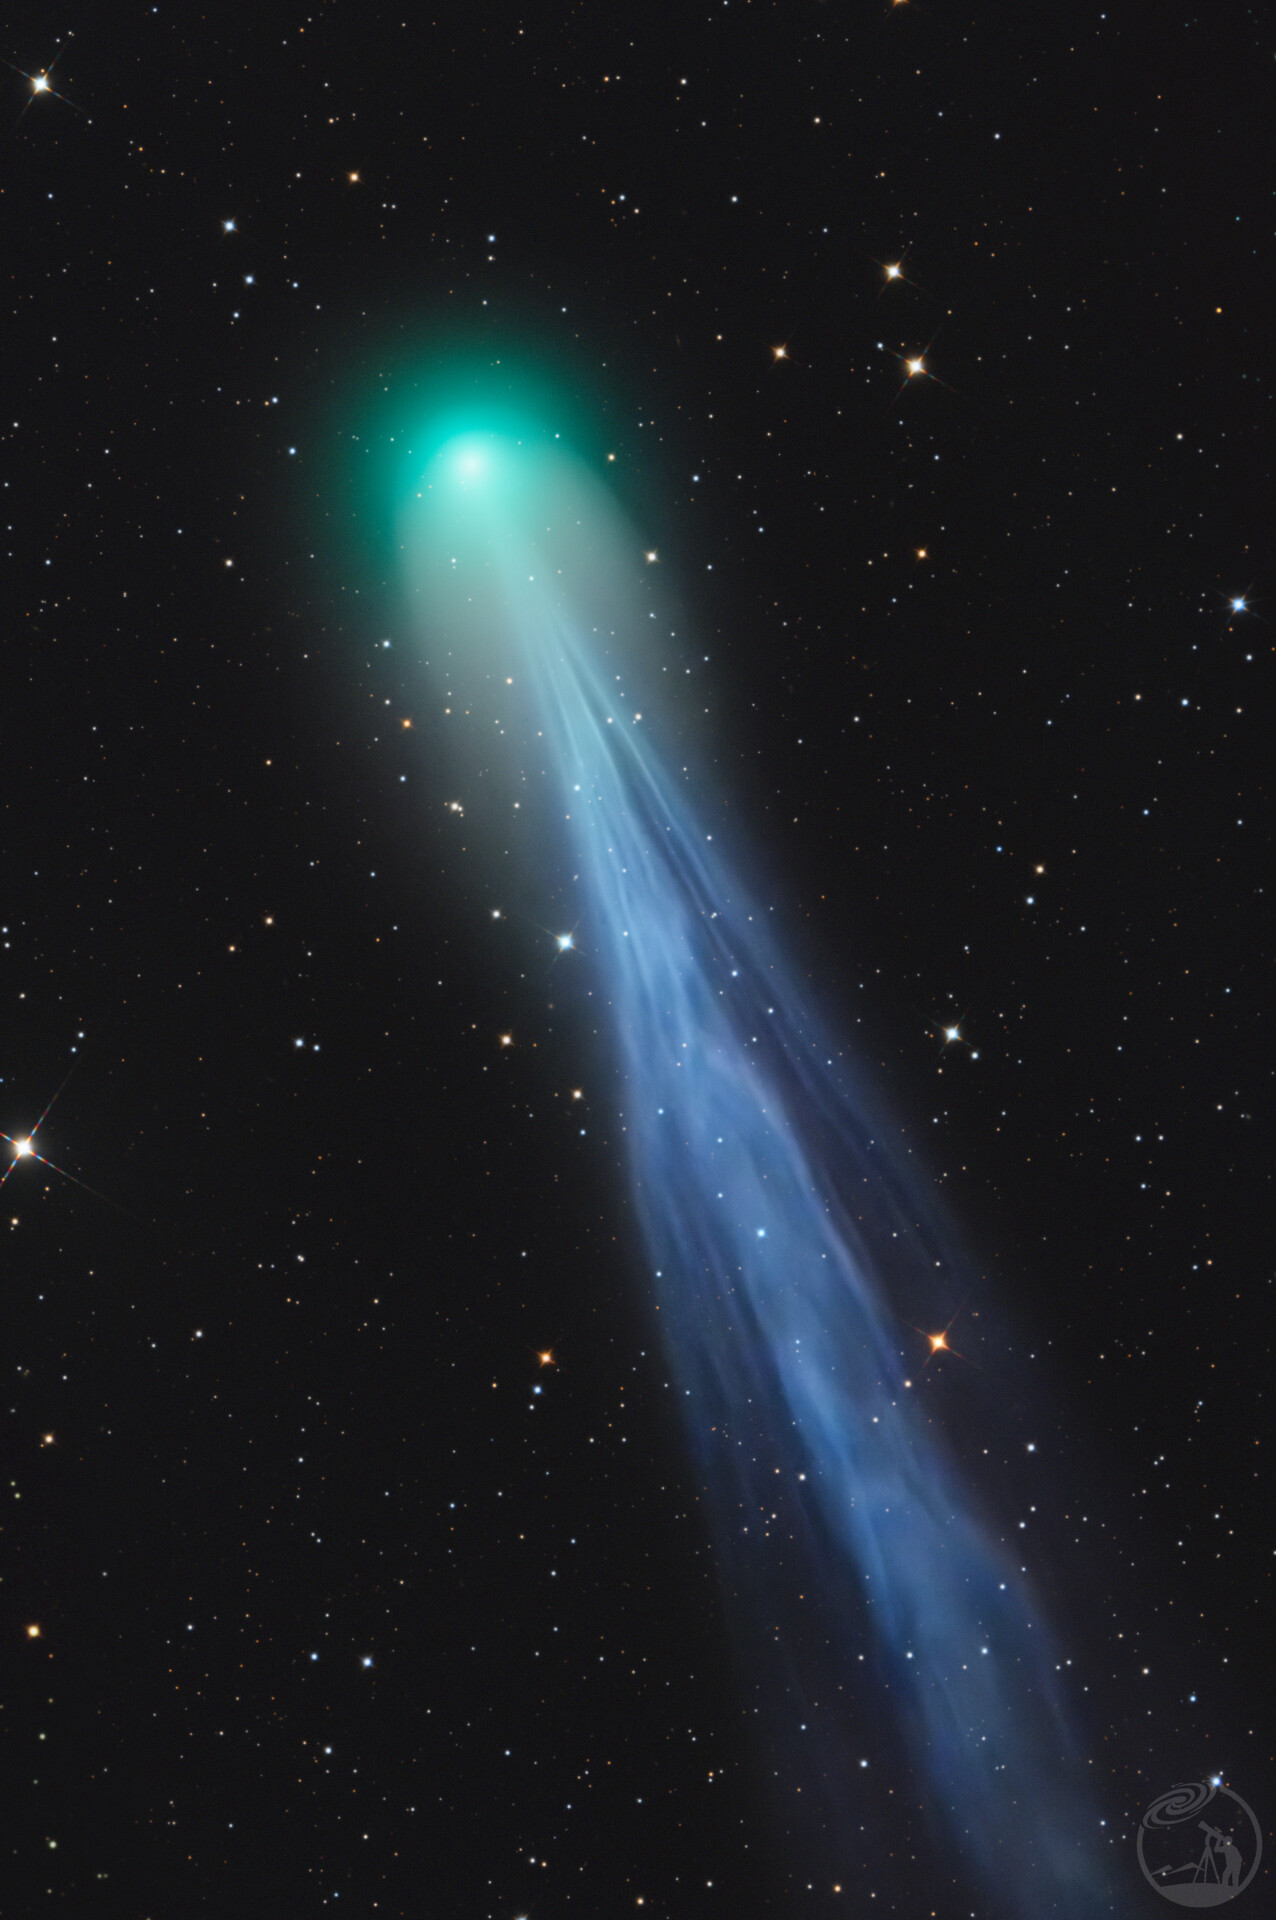 彗星12P/Pons-Brooks(螺旋丸彗星第二页更新)